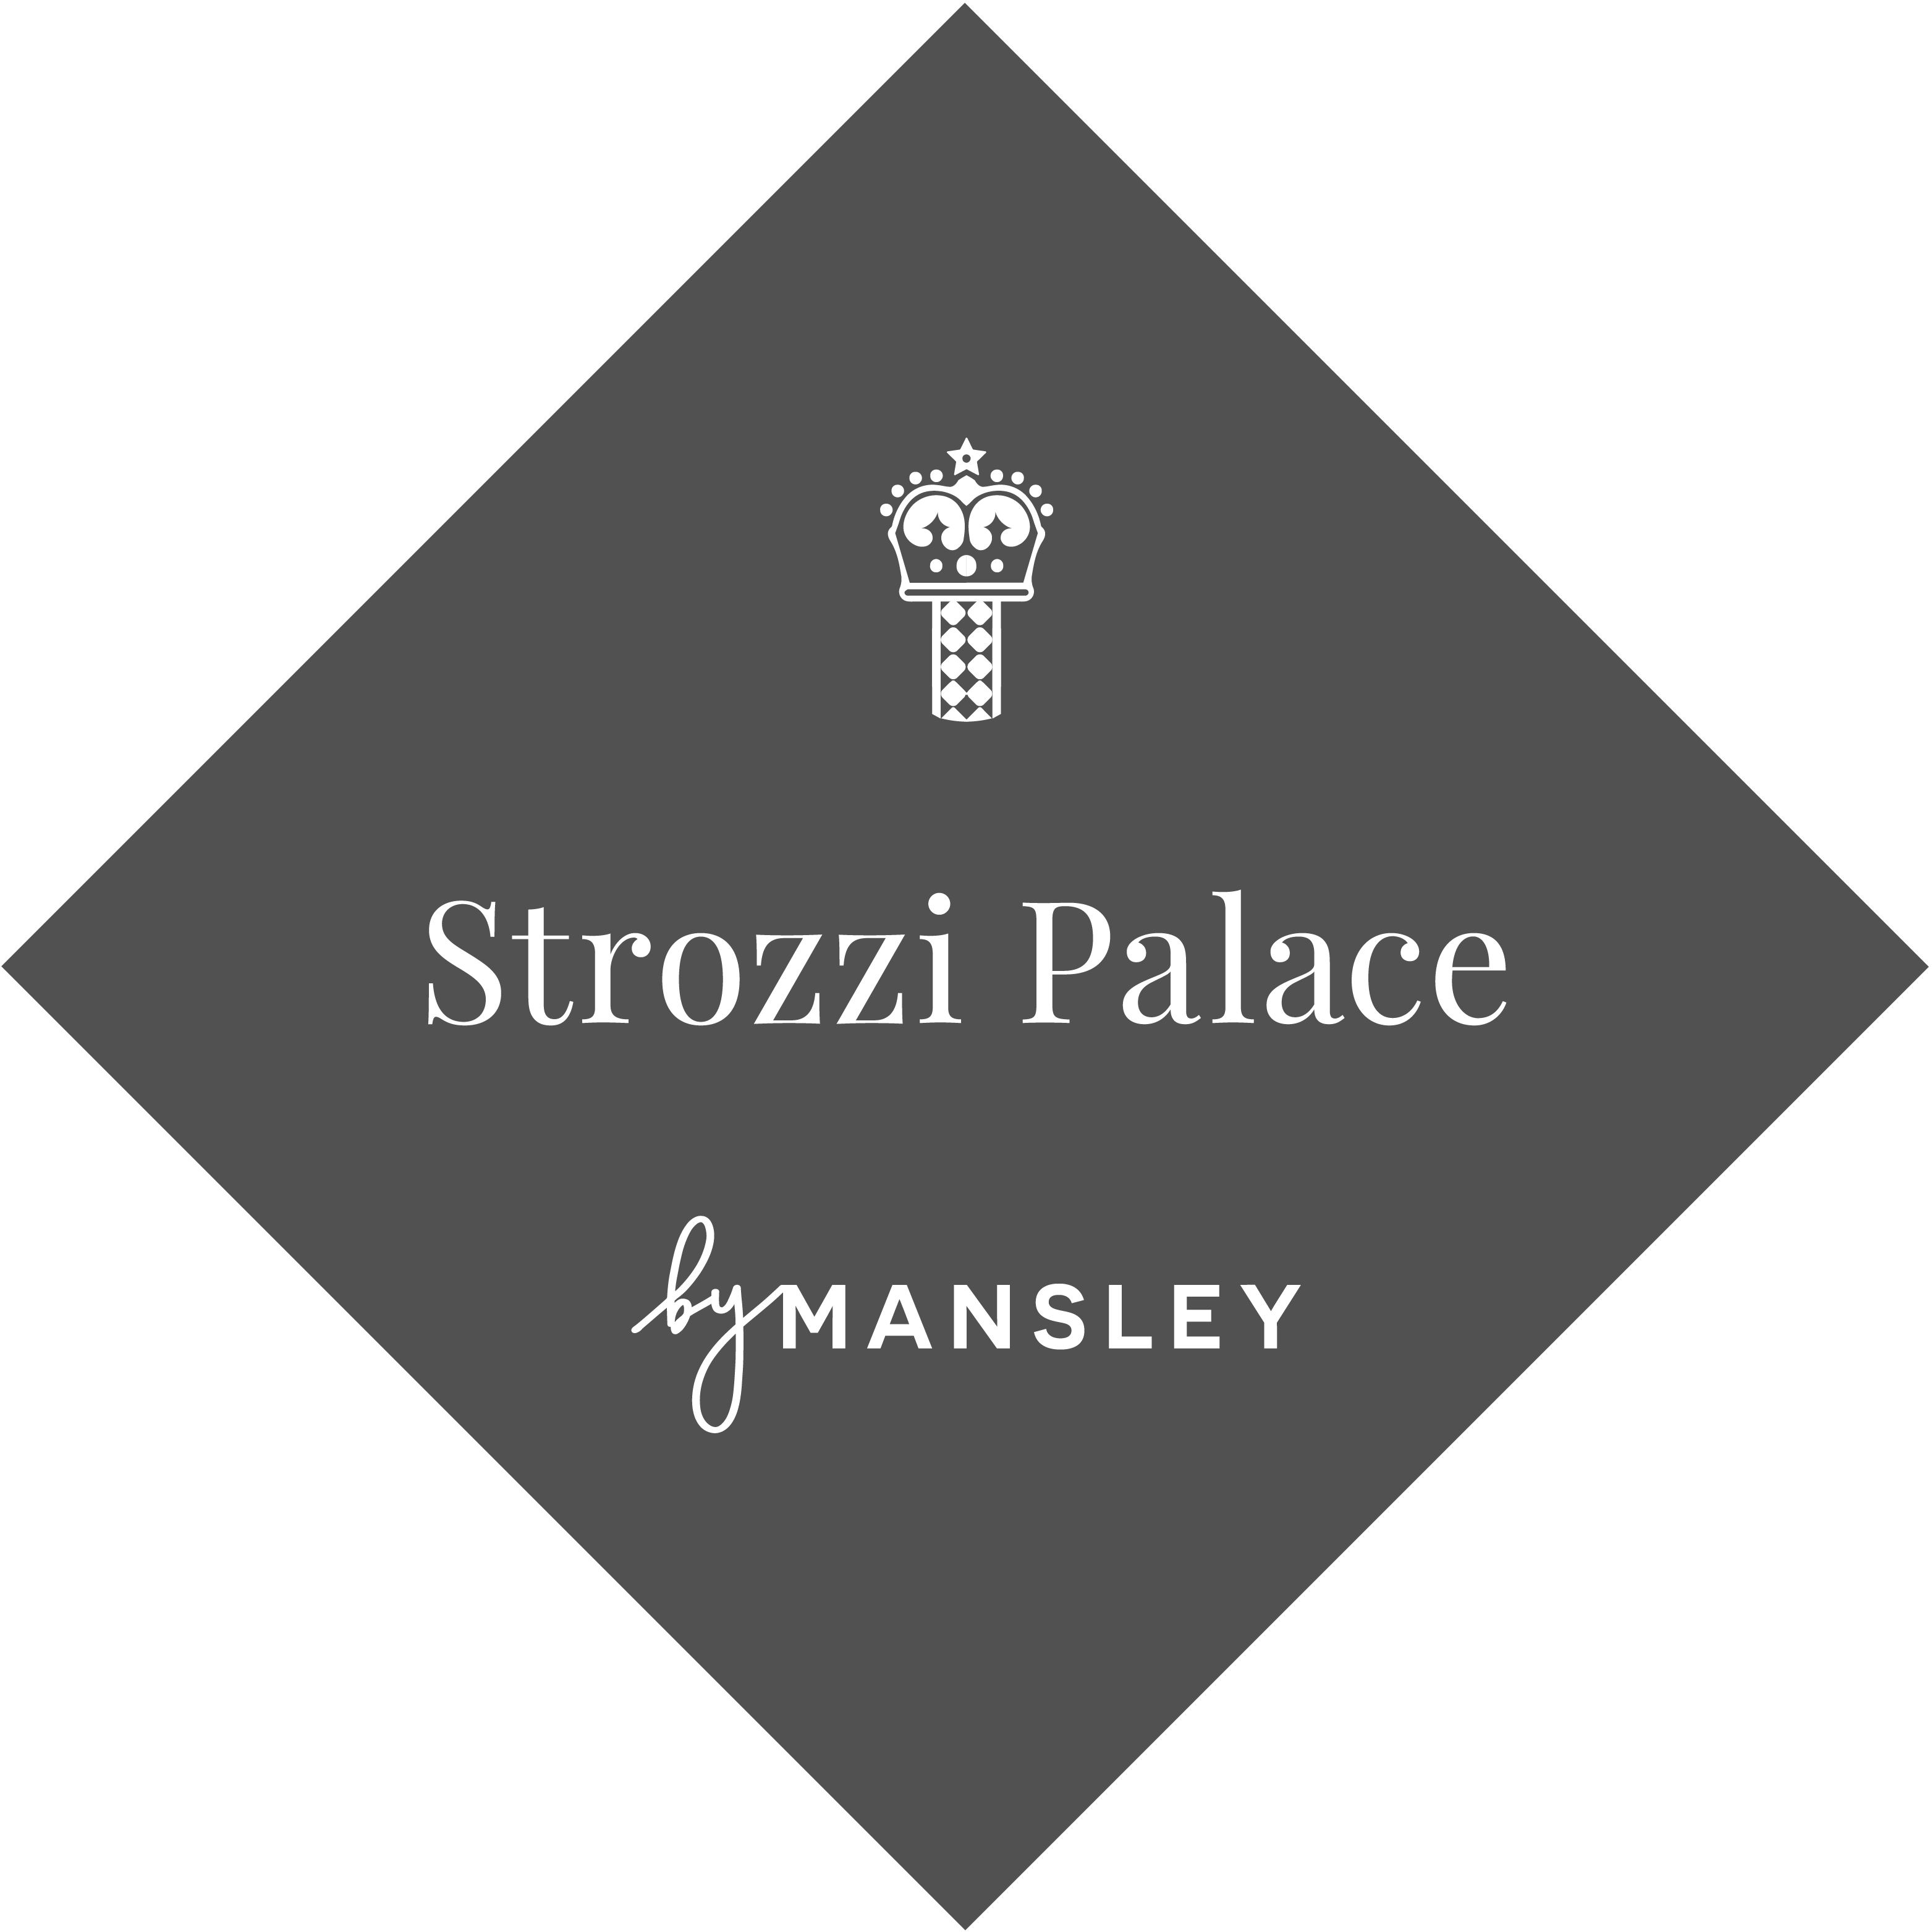 Strozzi palace badge